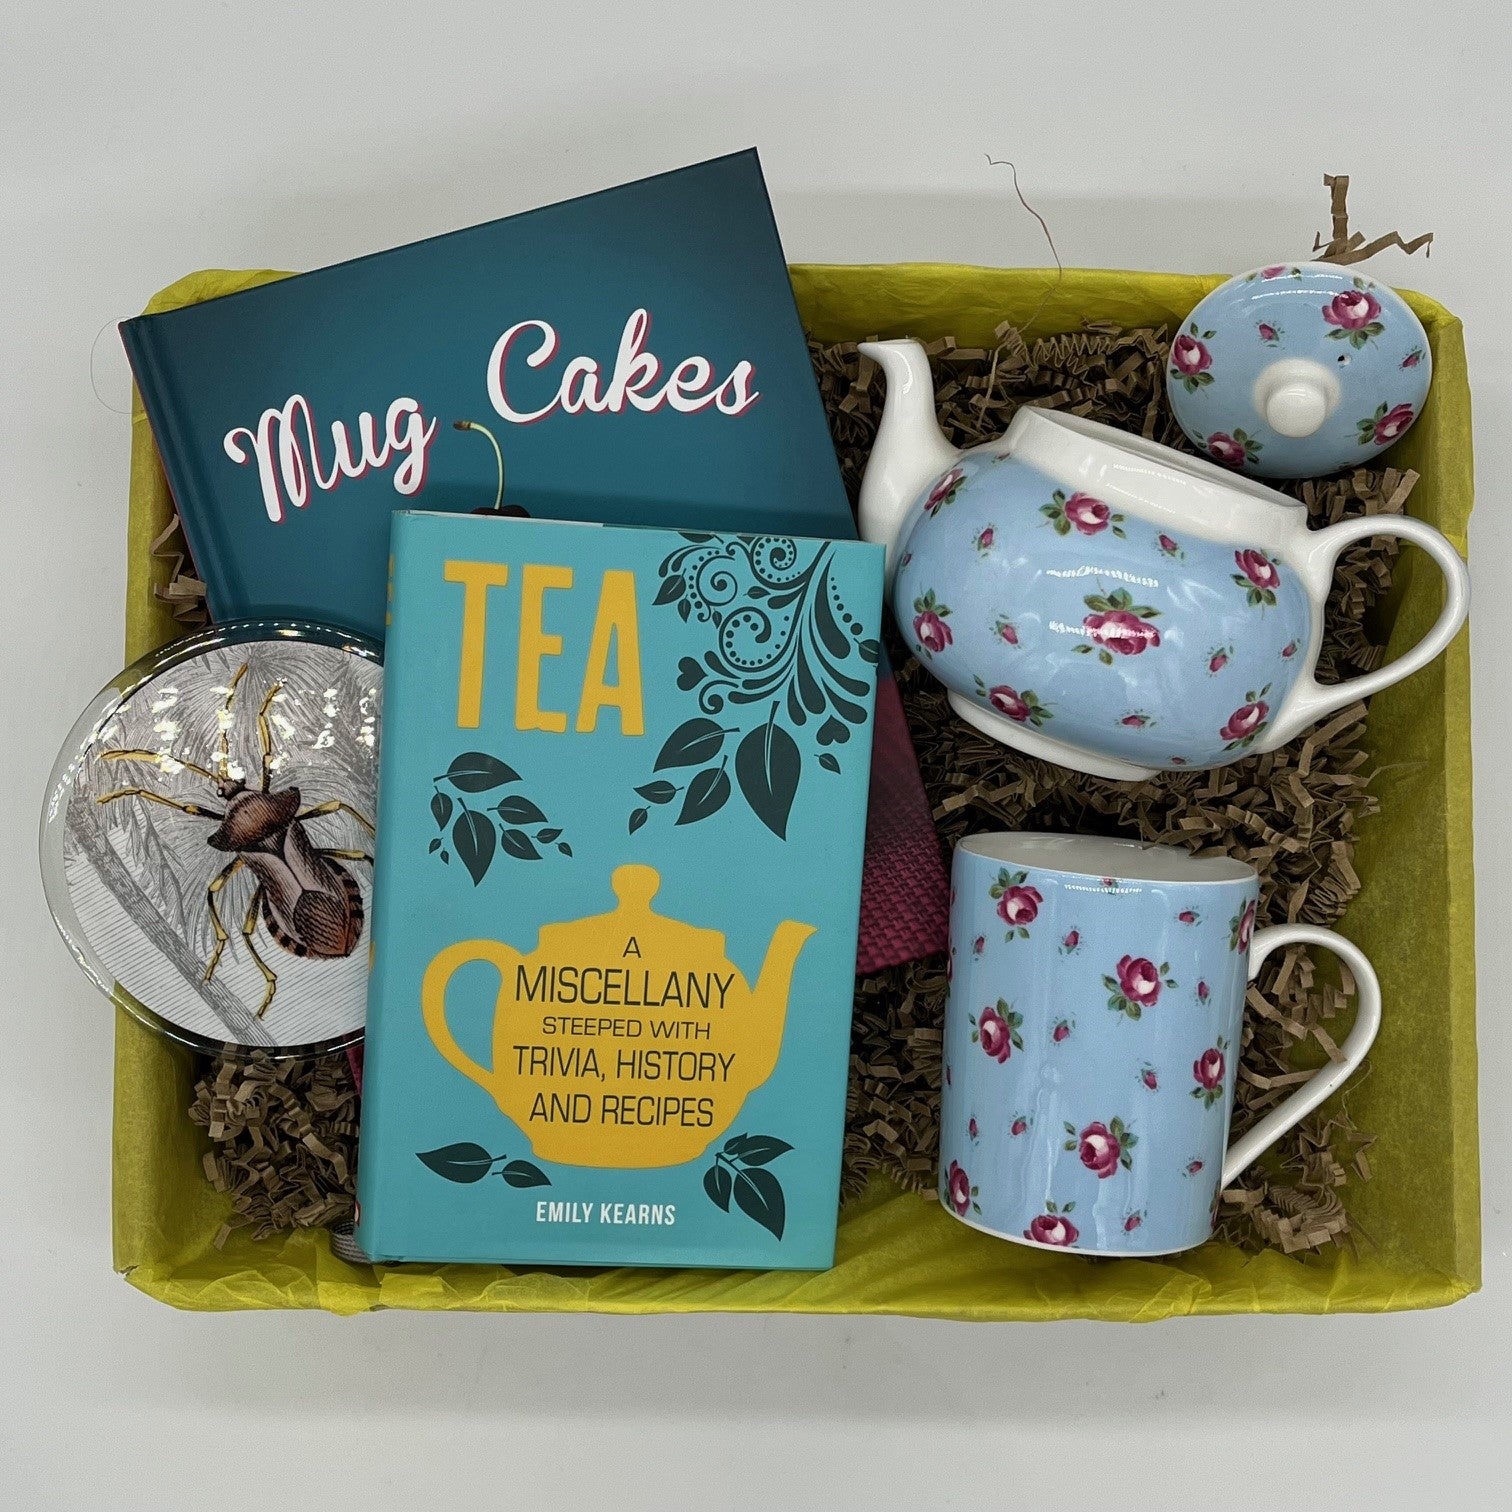 'Tea & Cake' (as new accessory box!)